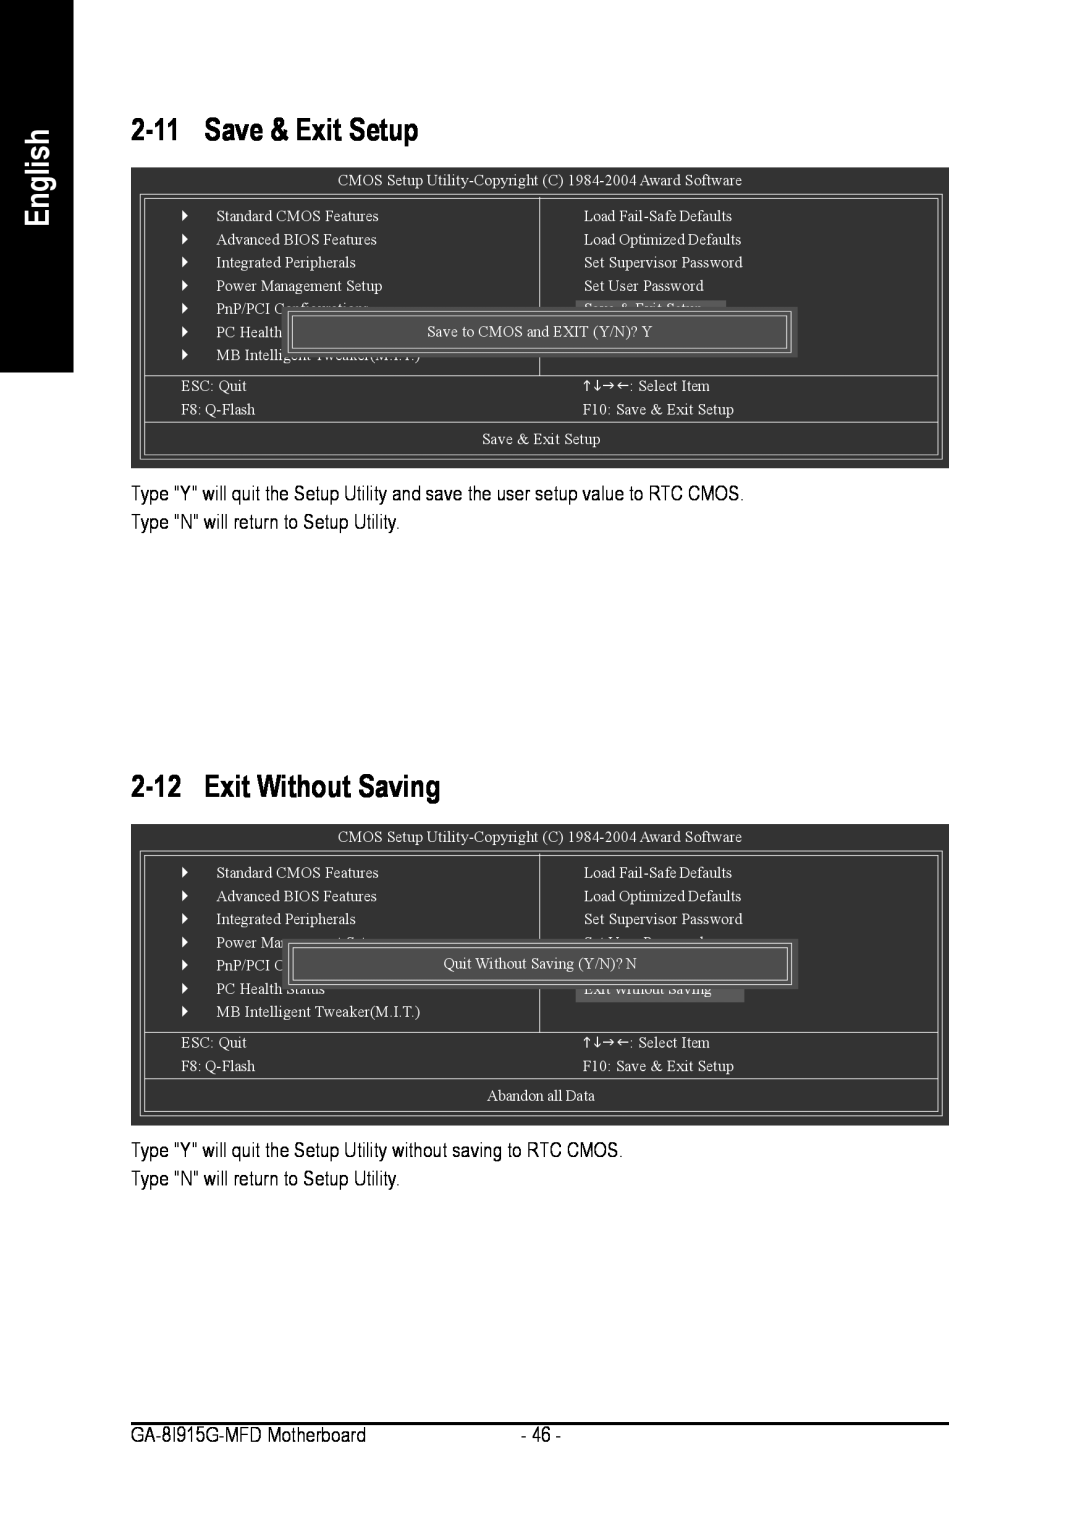 Intel GA-8I915G-MFD 2-11Save & Exit Setup, 2-12Exit Without Saving, English, Type N will return to Setup Utility 